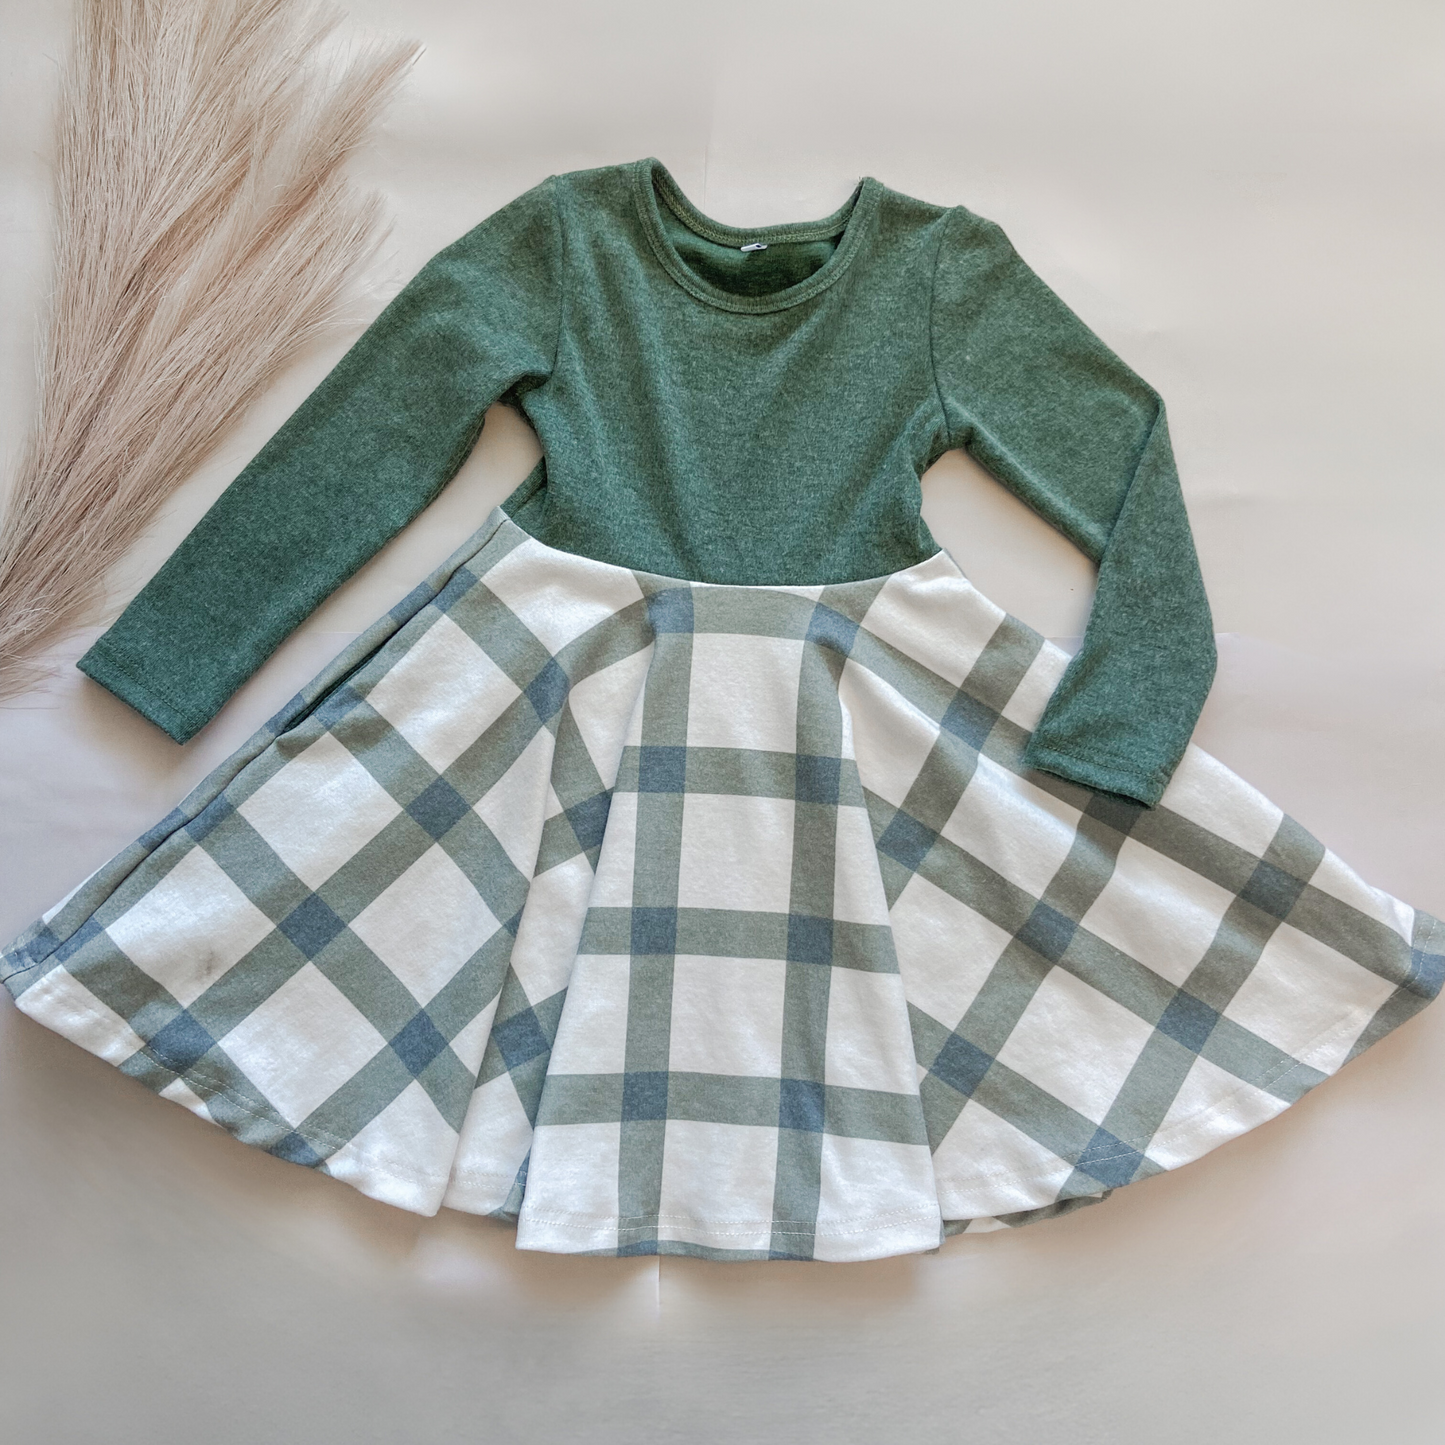 Twirl Dress - Green & Plaid